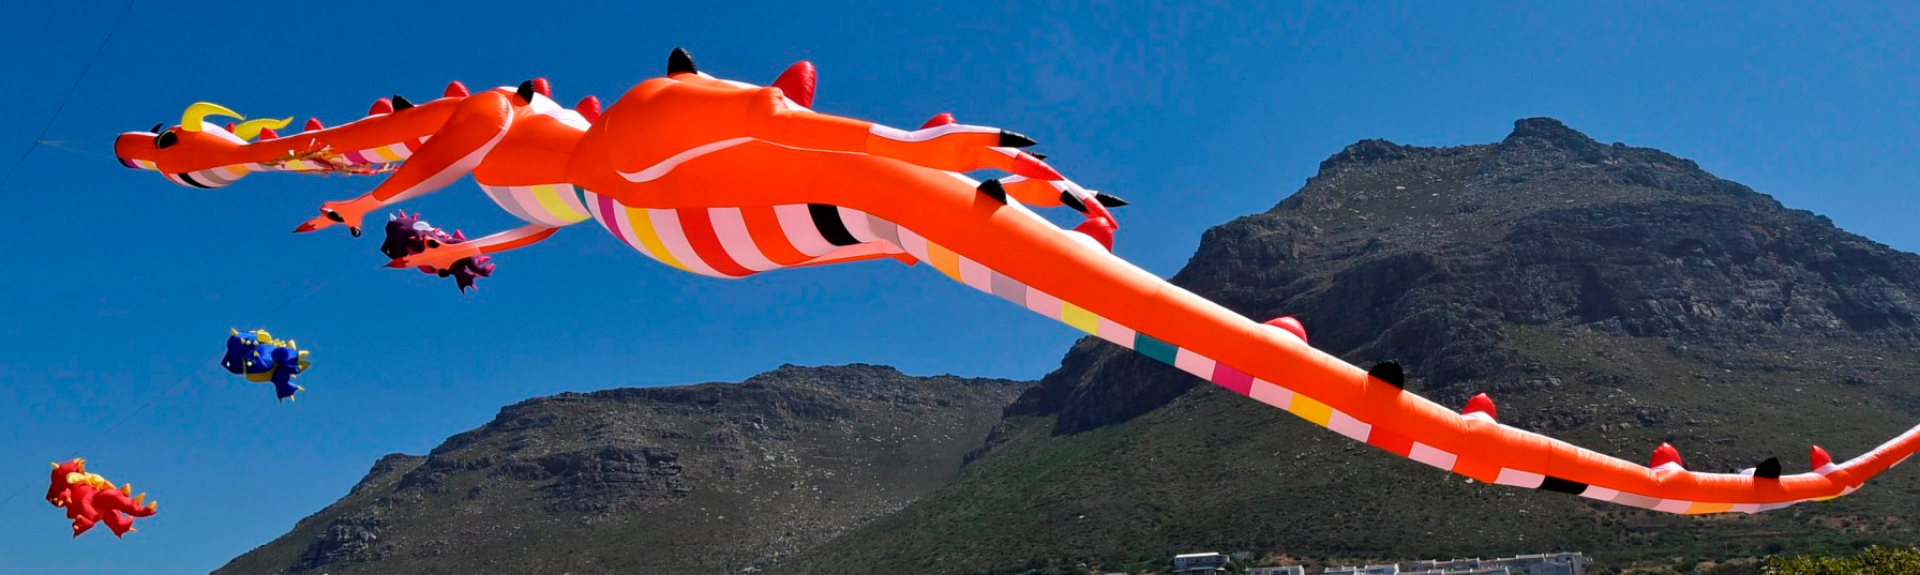 Cape Town International Kite Festival 2019